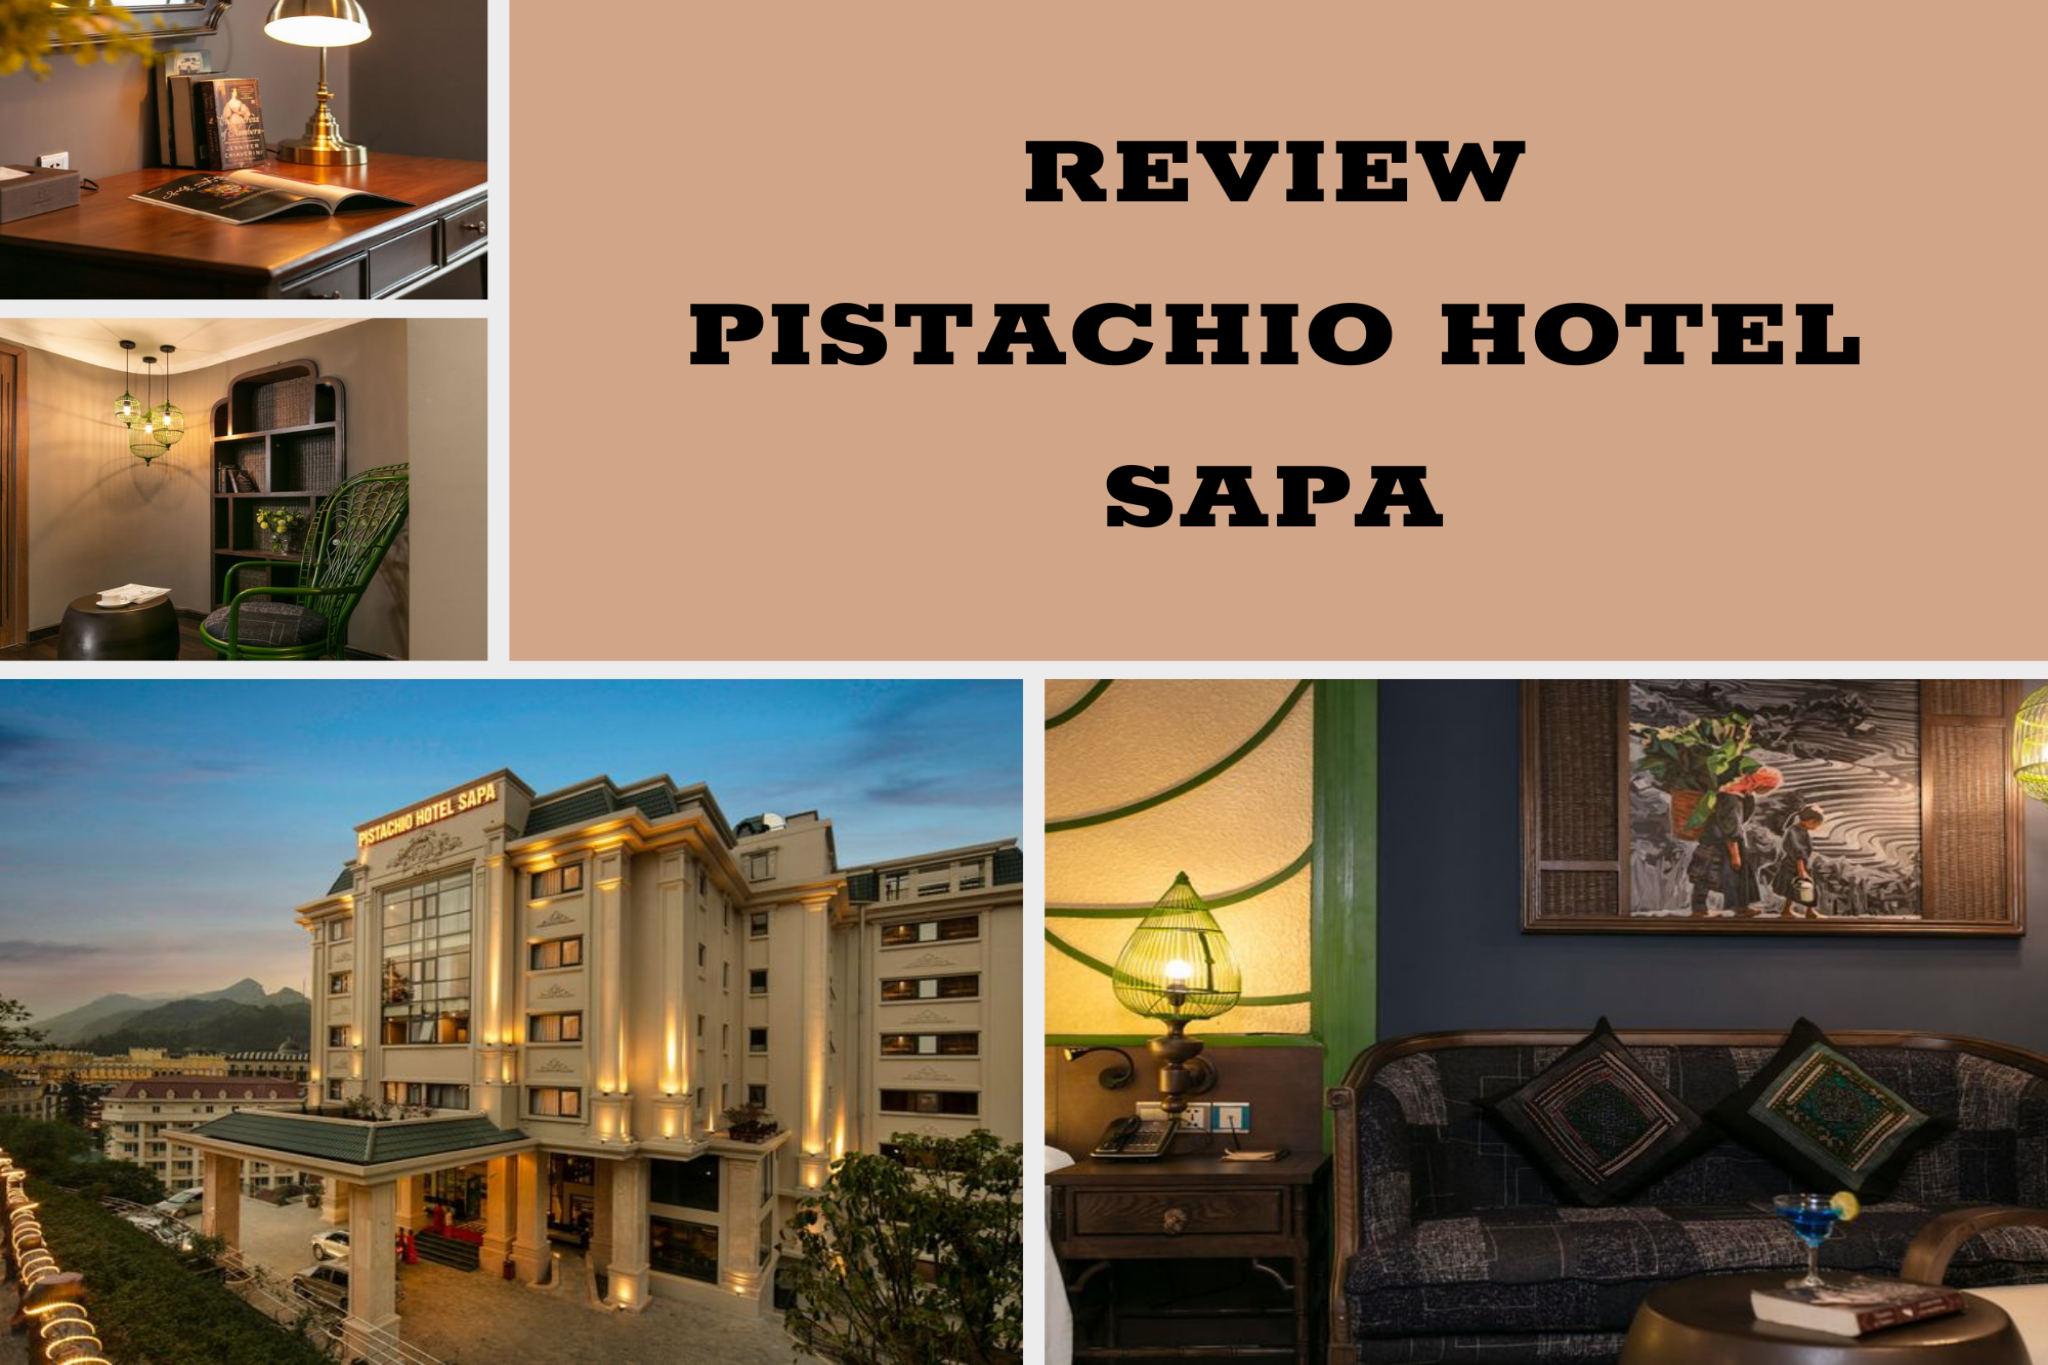 Review Pistachio Hotel Sapa mang phong cách đậm chất Châu Âu đương đại